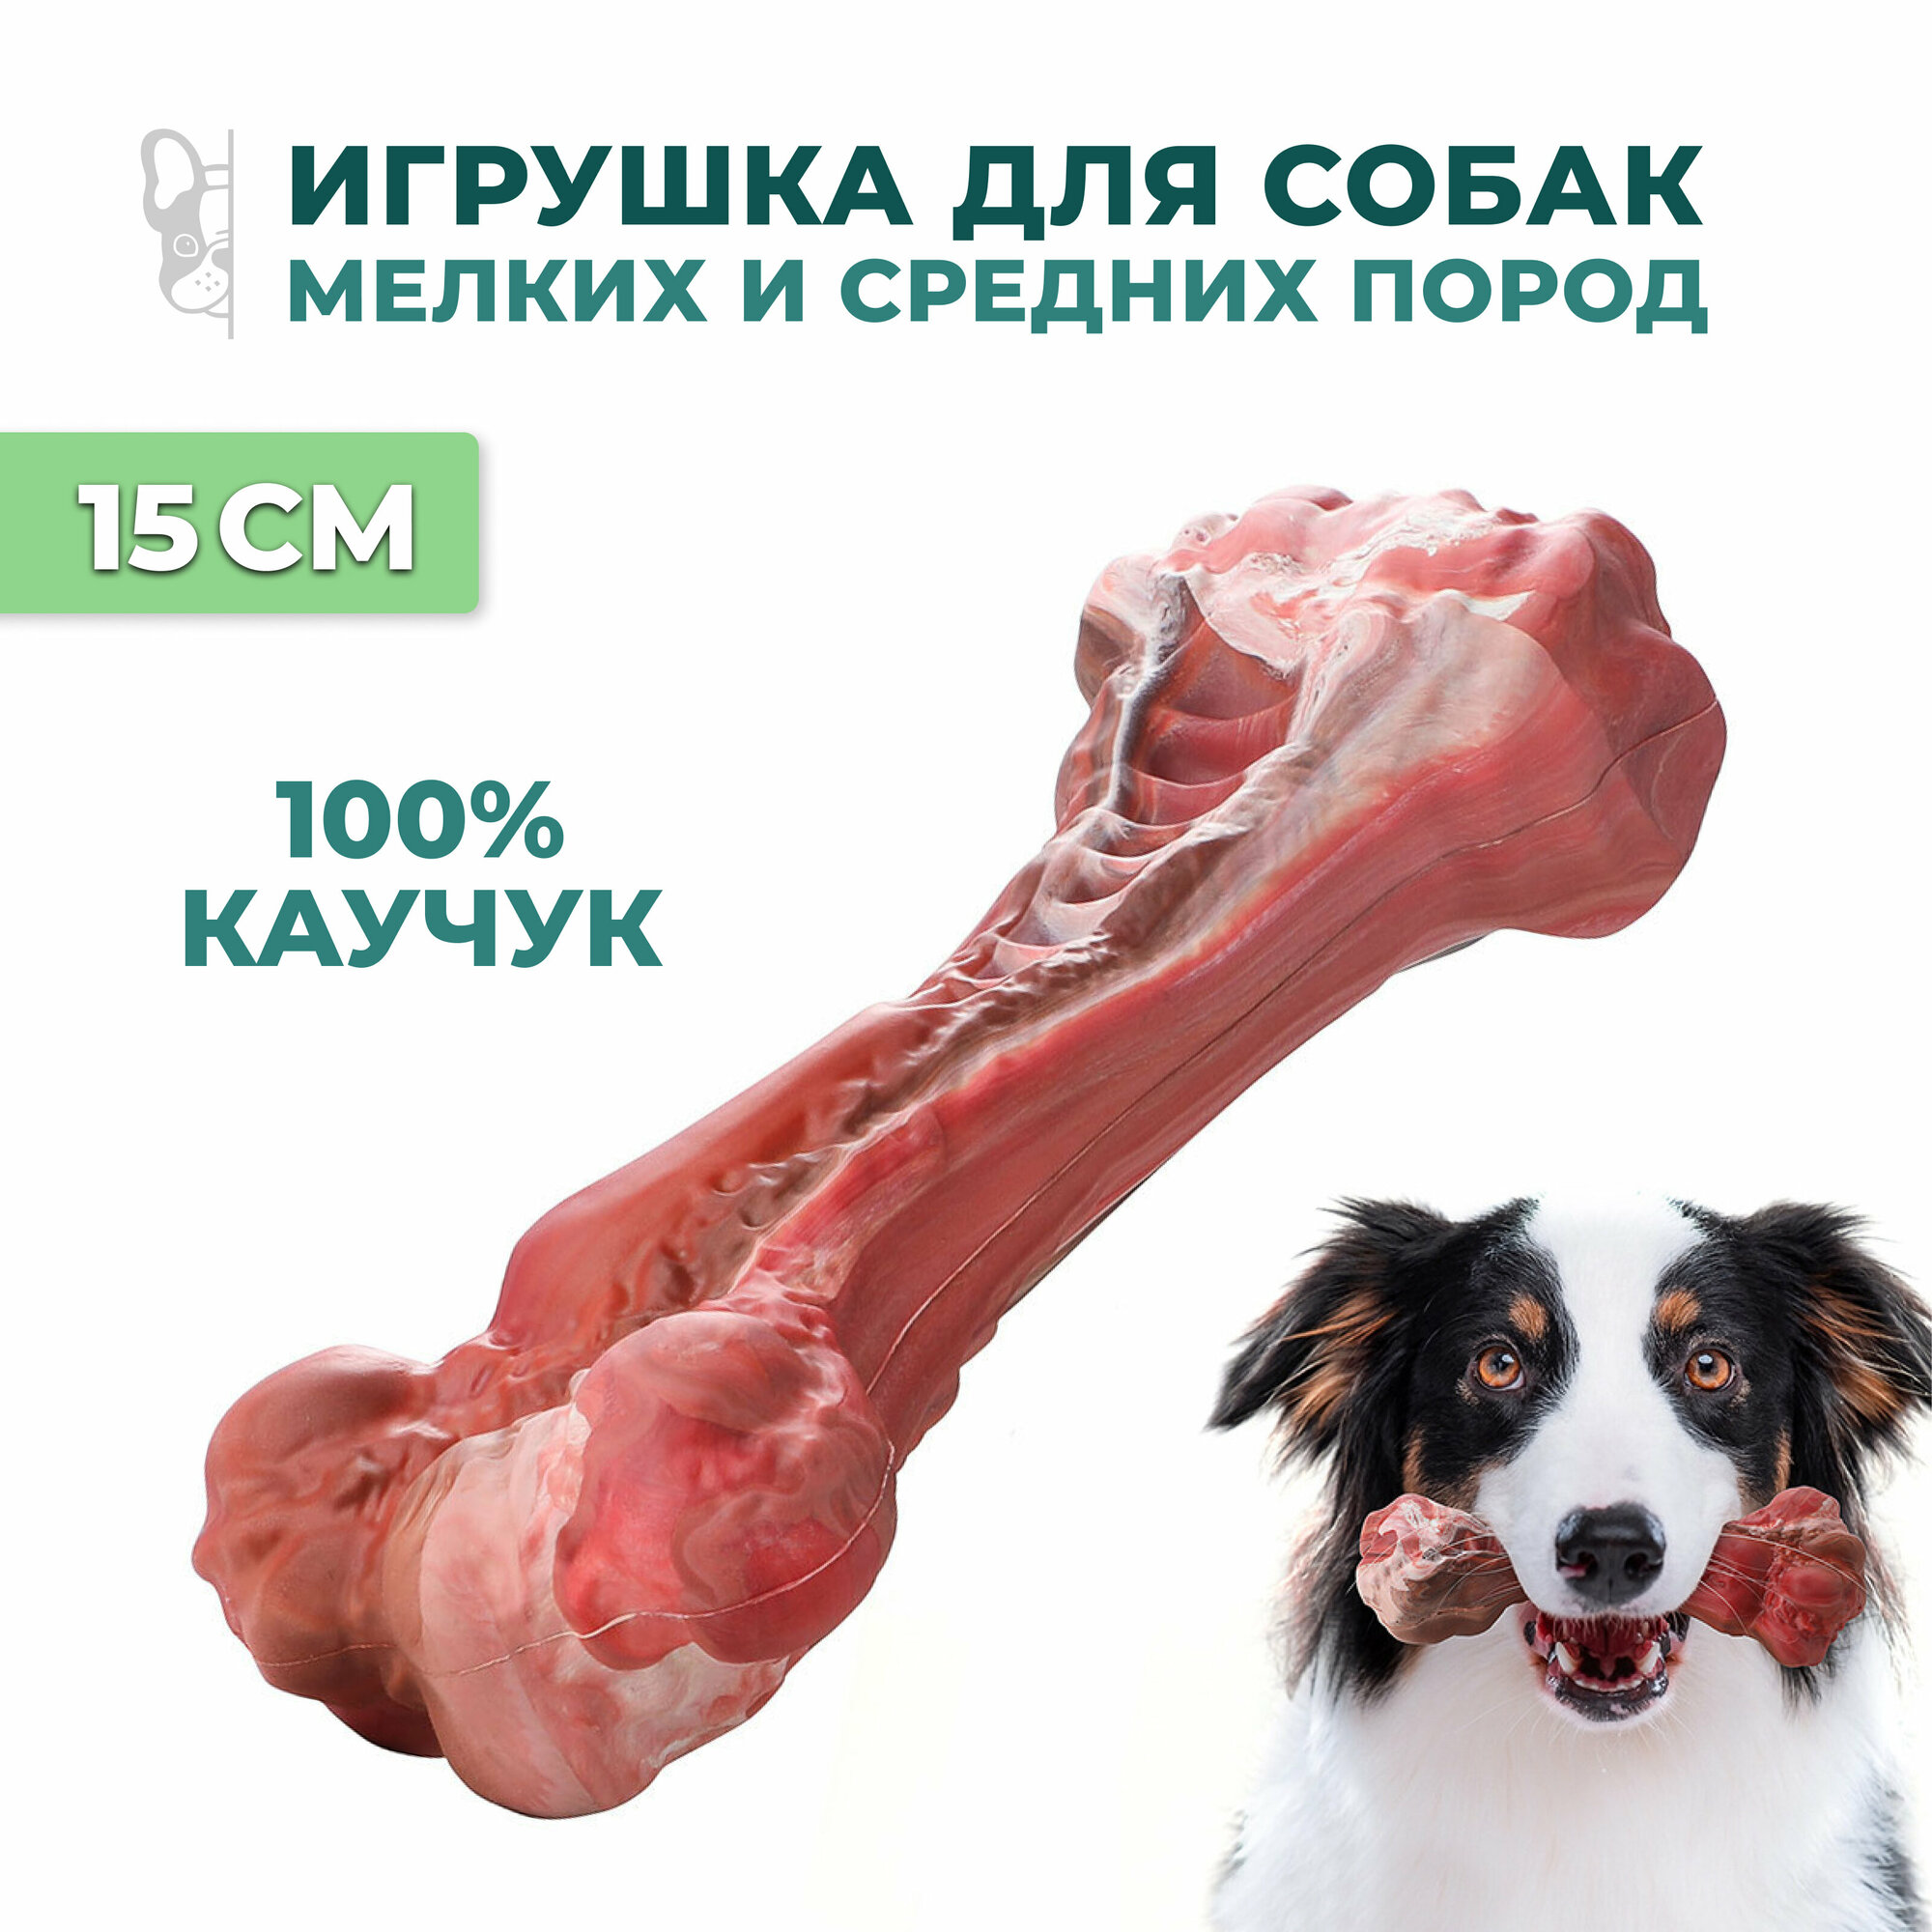 Игрушка для собак средних пород кость 15 см / резиновая / красная